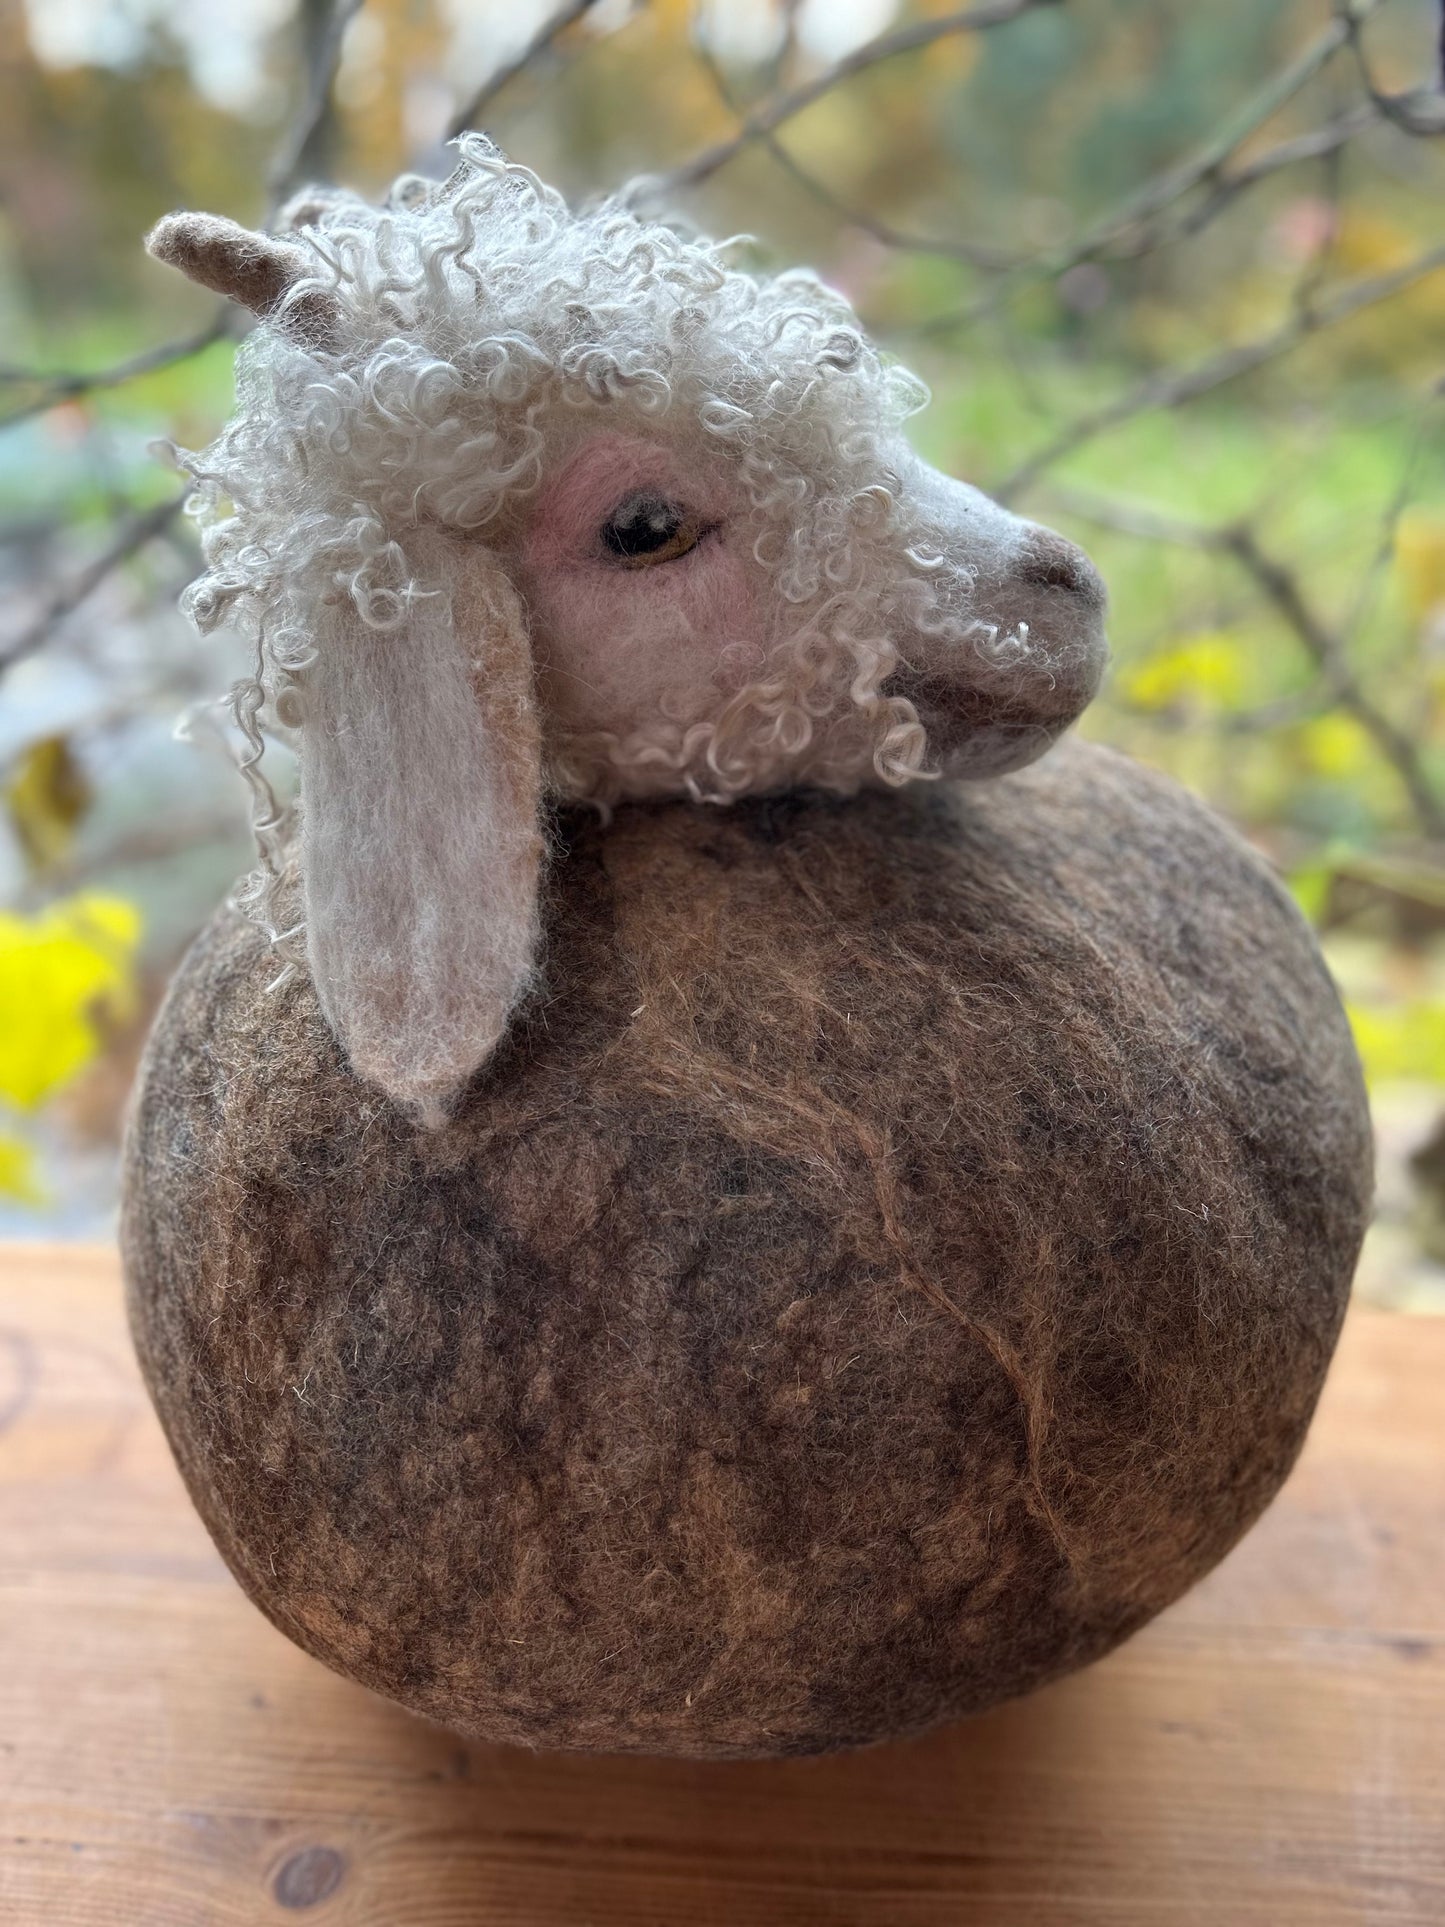 Dit lieve kopje van een angorageit lam ziet er echt uit, maar is volledig uit wol en mohair opgebouwd en met behulp van speciale viltnaalden tot dit levensgroot en levensecht geheel gevilt.